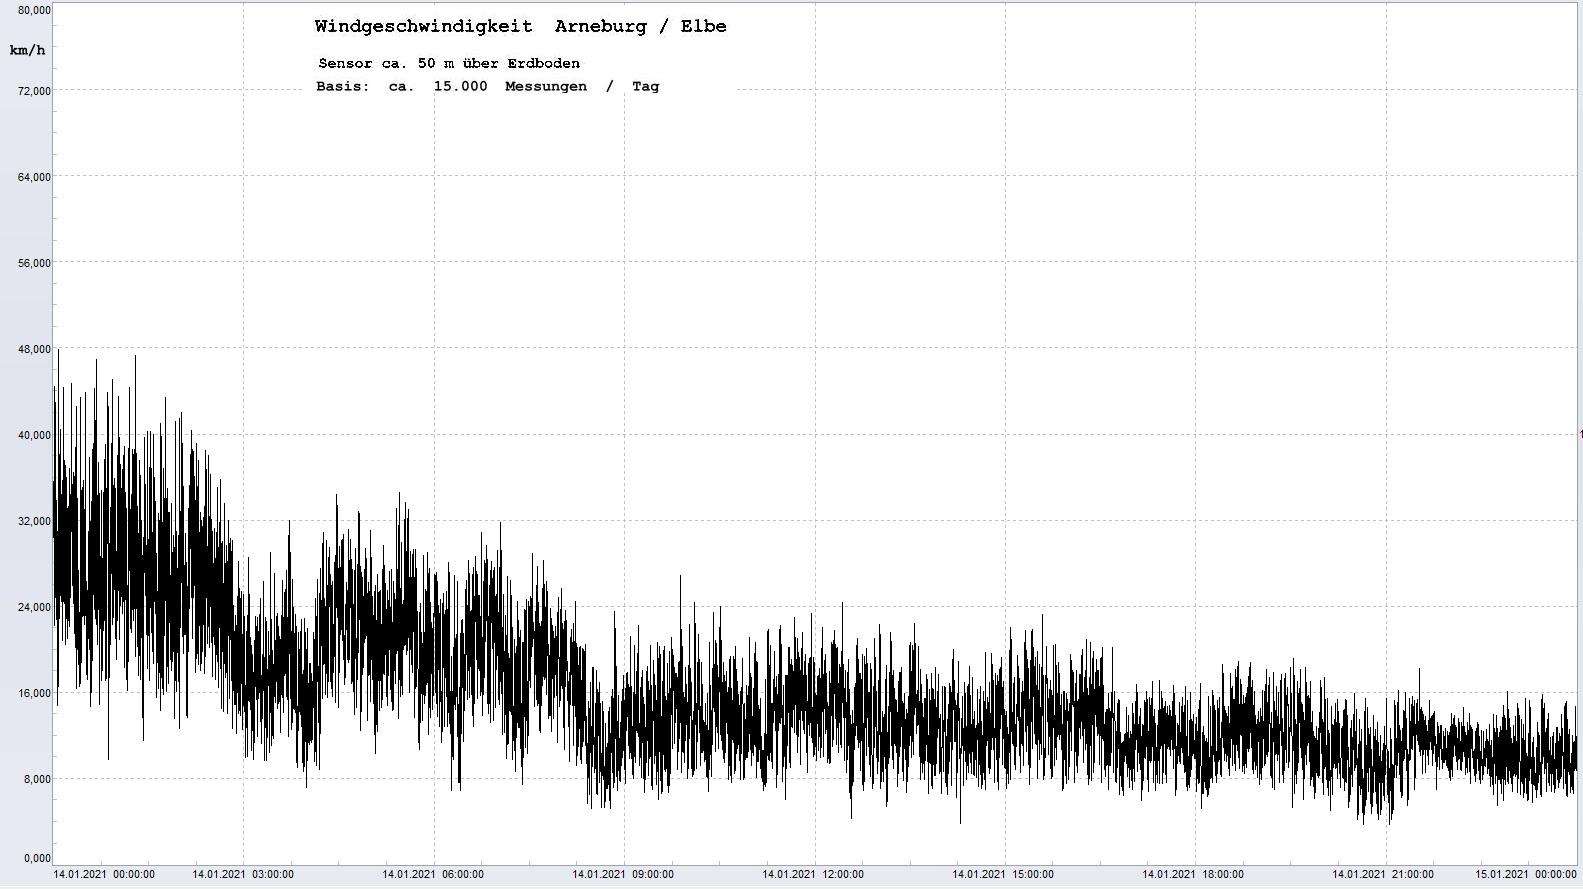 Arneburg Tages-Diagramm Winddaten, 14.01.2021
  Histogramm, Sensor auf Gebude, ca. 50 m ber Erdboden, Basis: 5s-Aufzeichnung